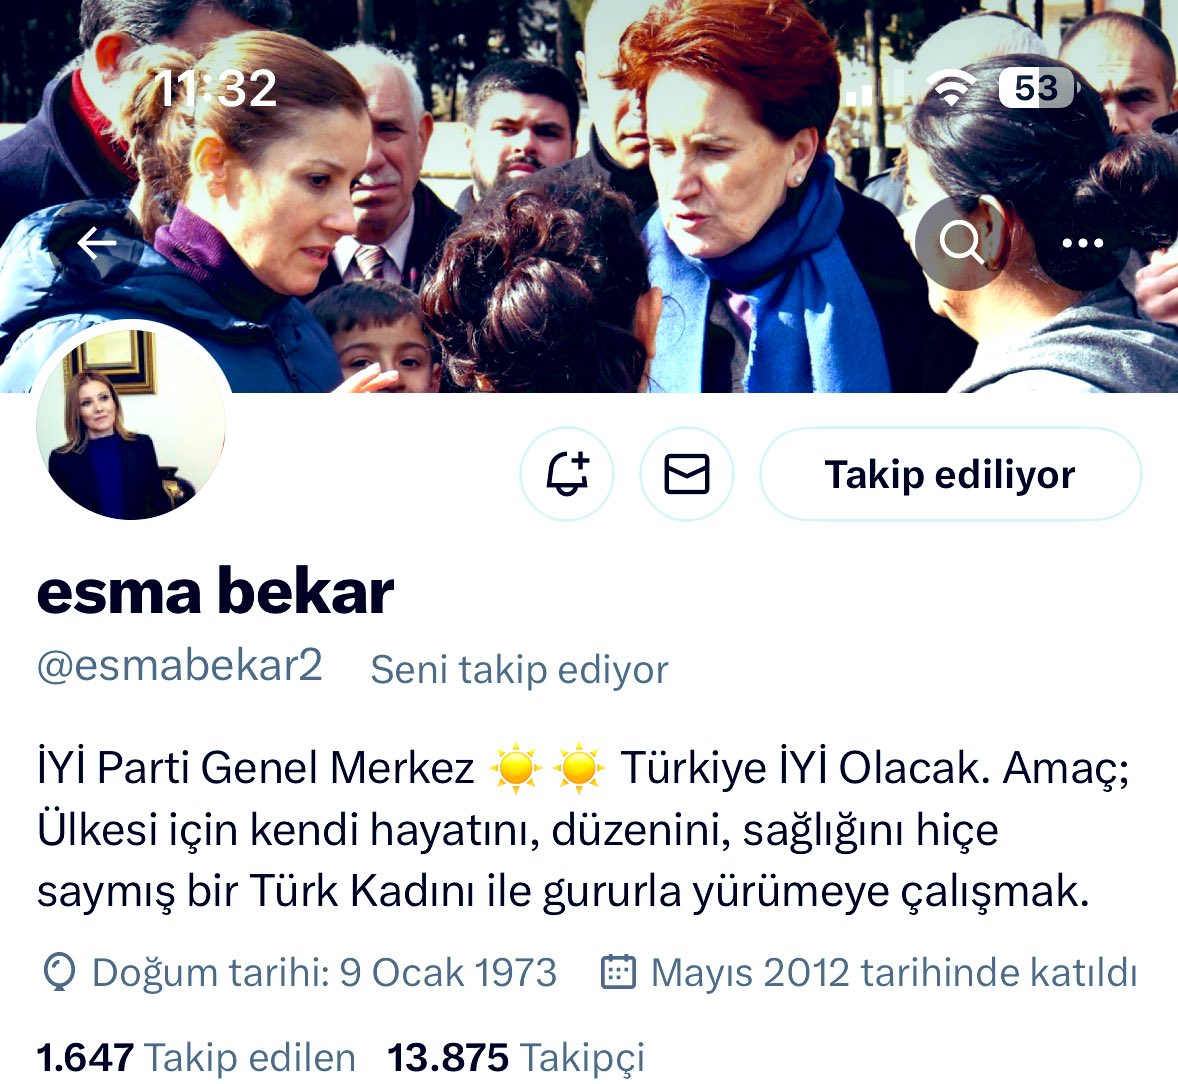 Ülkesi için kendi hayatını, düzenini ,sağlığını hiçe saymış bir Türk kadınıyla ( @meral_aksener ) yol yürüyen   çok çok değerli ablam @esmabekar2 beni takibe alarak onure ettiği için çok teşekkür ediyorum.